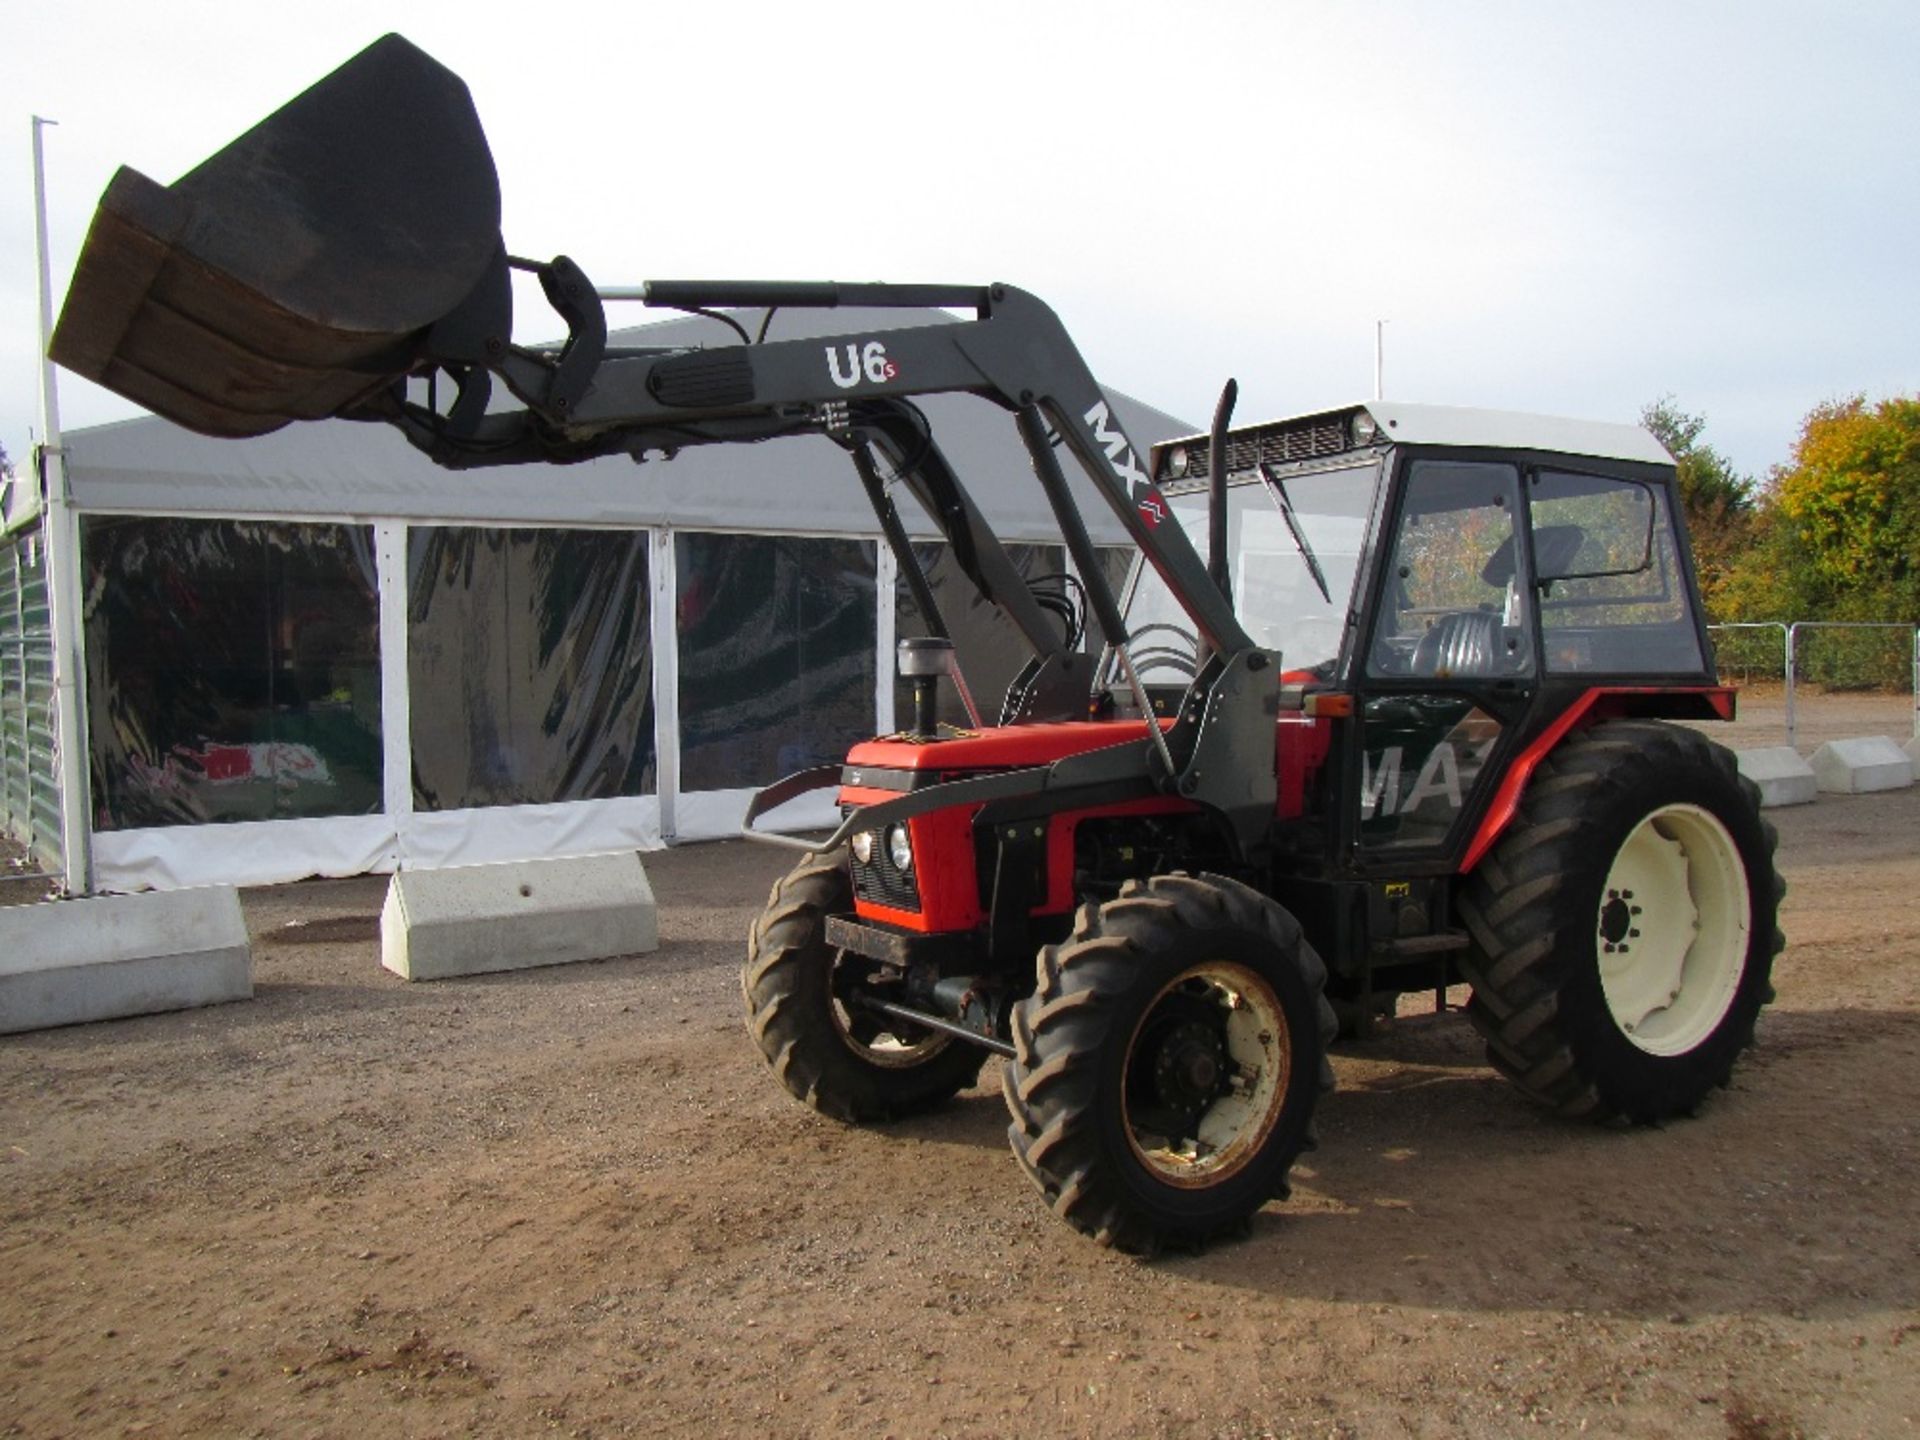 Zetor 7745 4wd Tractor. Chilton MXU6 Loader. Loader fitted 2014. No V5. 1650 hrs. Reg. No. L929